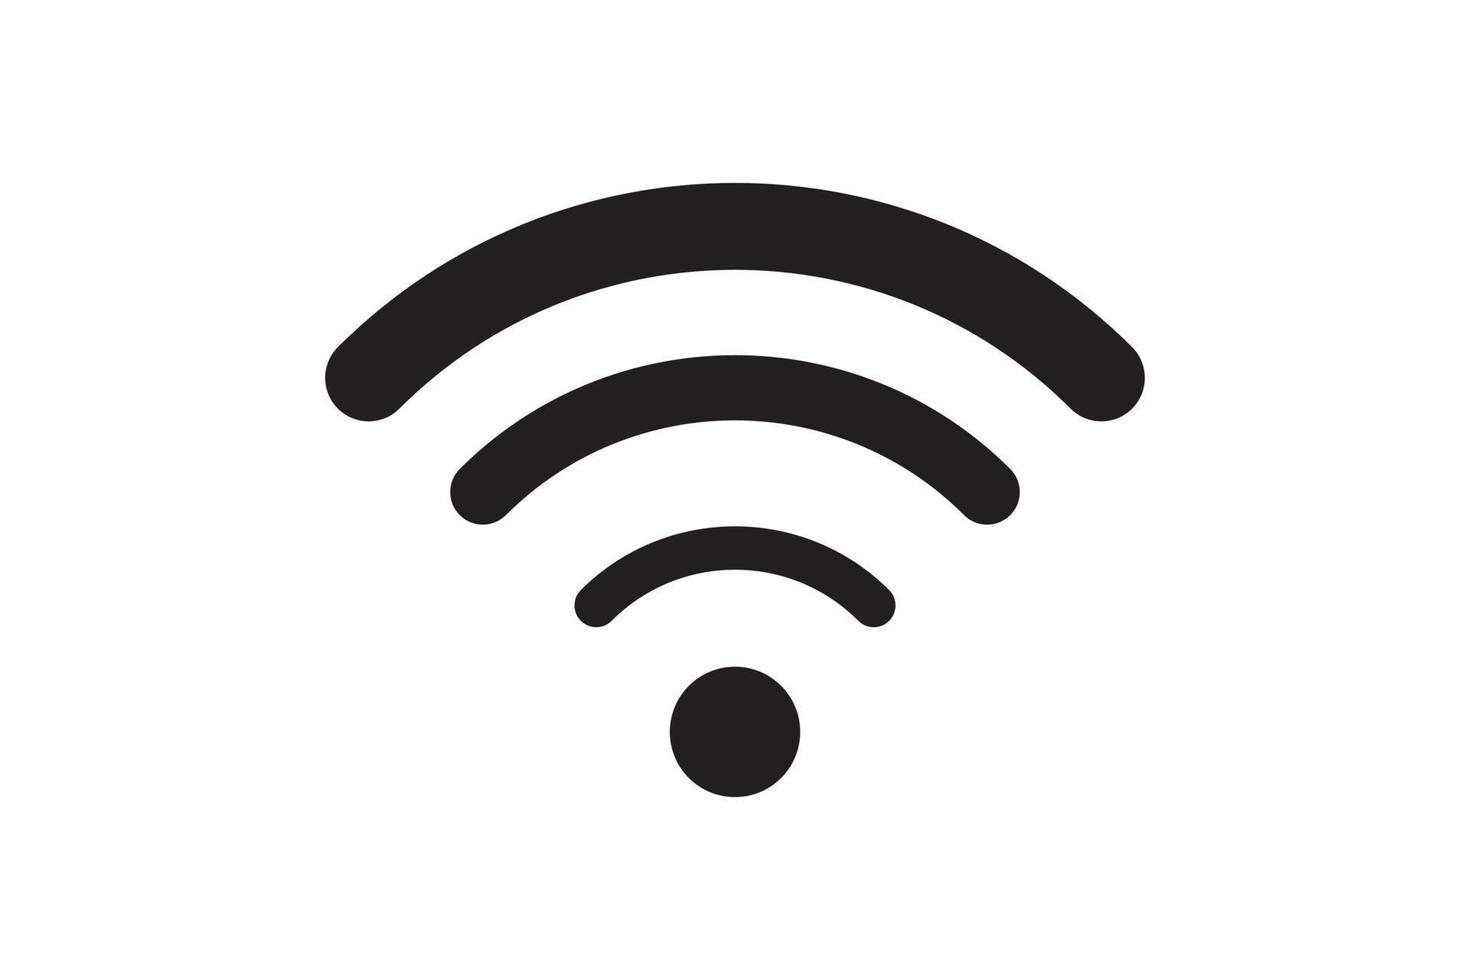 Wi-Fi-Symbolsignalverbindung. Vektor drahtloses Internet-Technologie-Zeichen. WLAN-Netzwerk-Kommunikationssymbol.